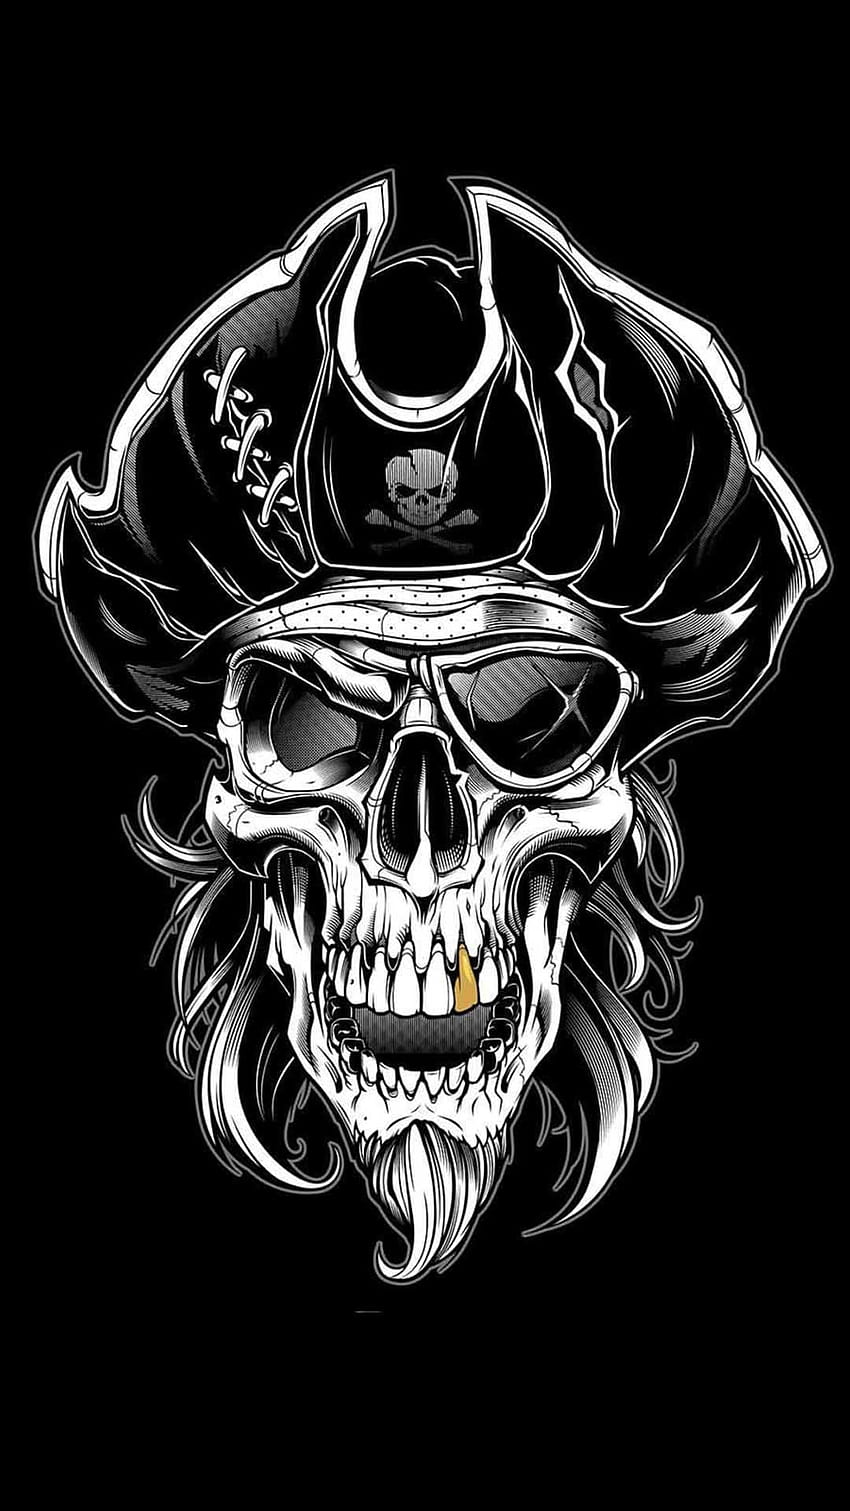 To be or not to be... by herrerabrandon60.deviantart.com on @DeviantArt |  Skulls drawing, Chicano art tattoos, Skull